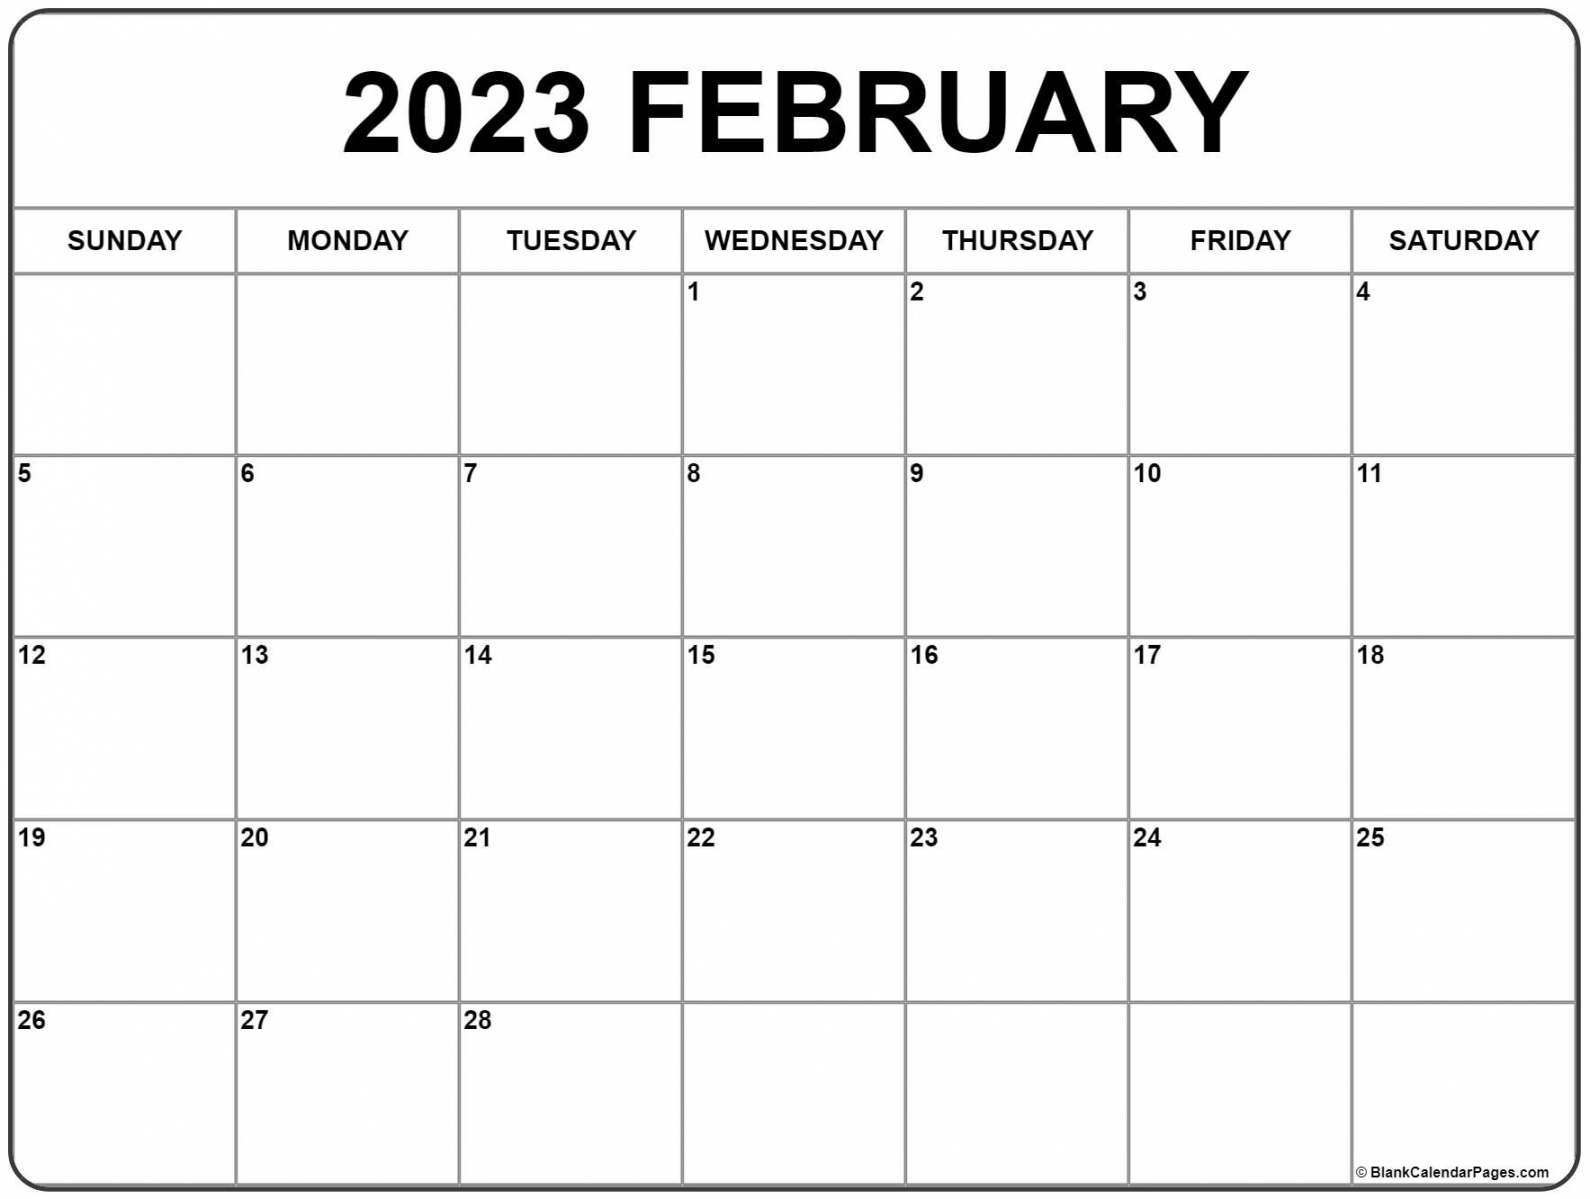 February  calendar  free printable calendar - FREE Printables - February 2023 Calendar Free Printable